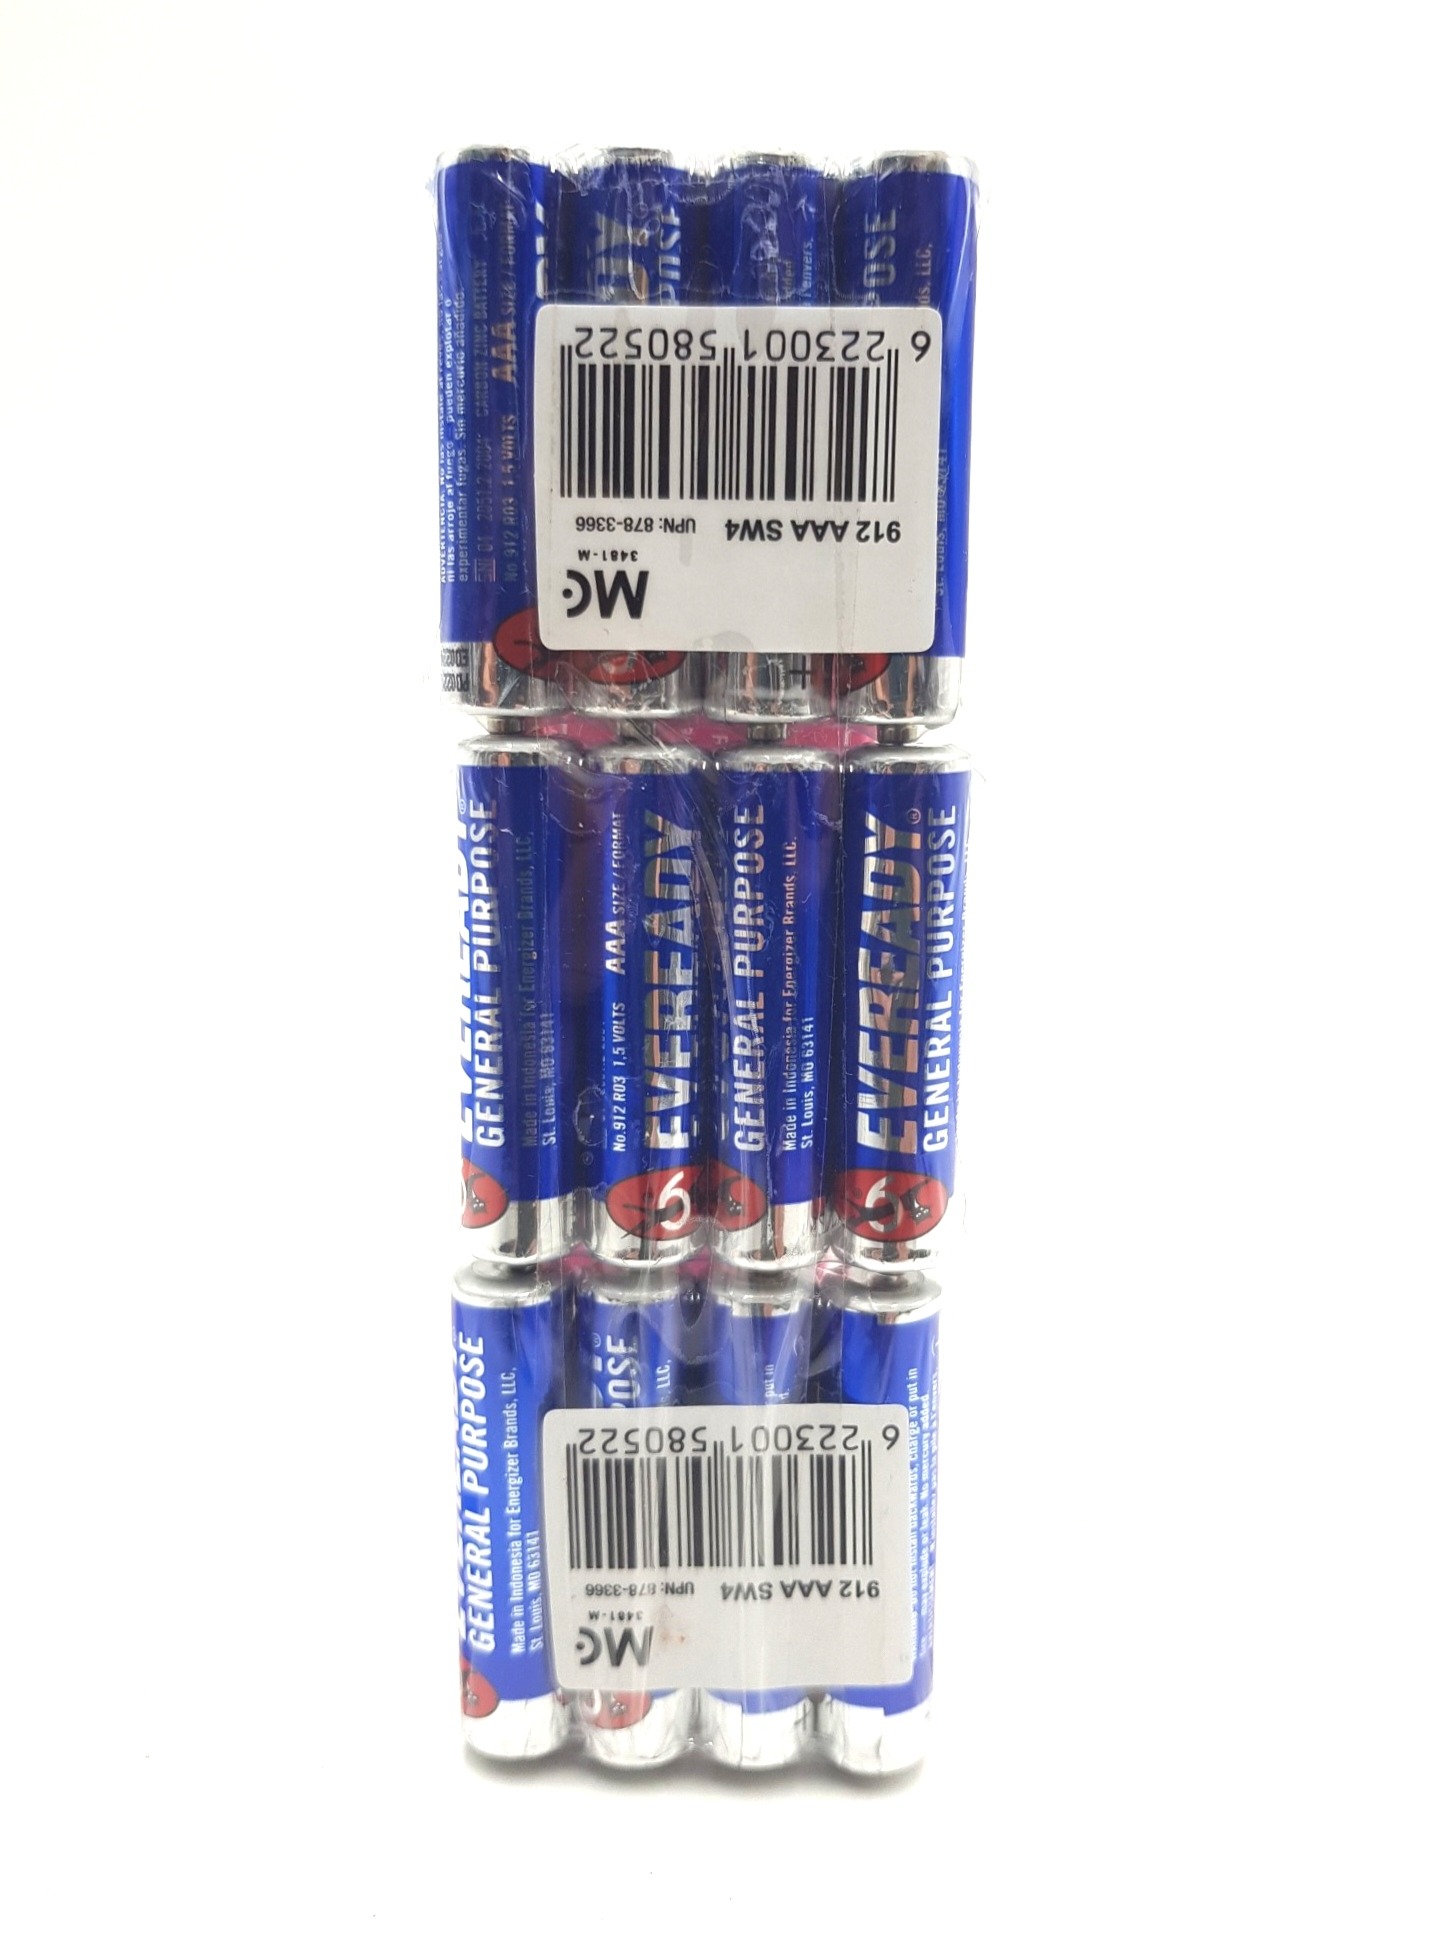 12 Pcs Pack battery 1.5 Volts